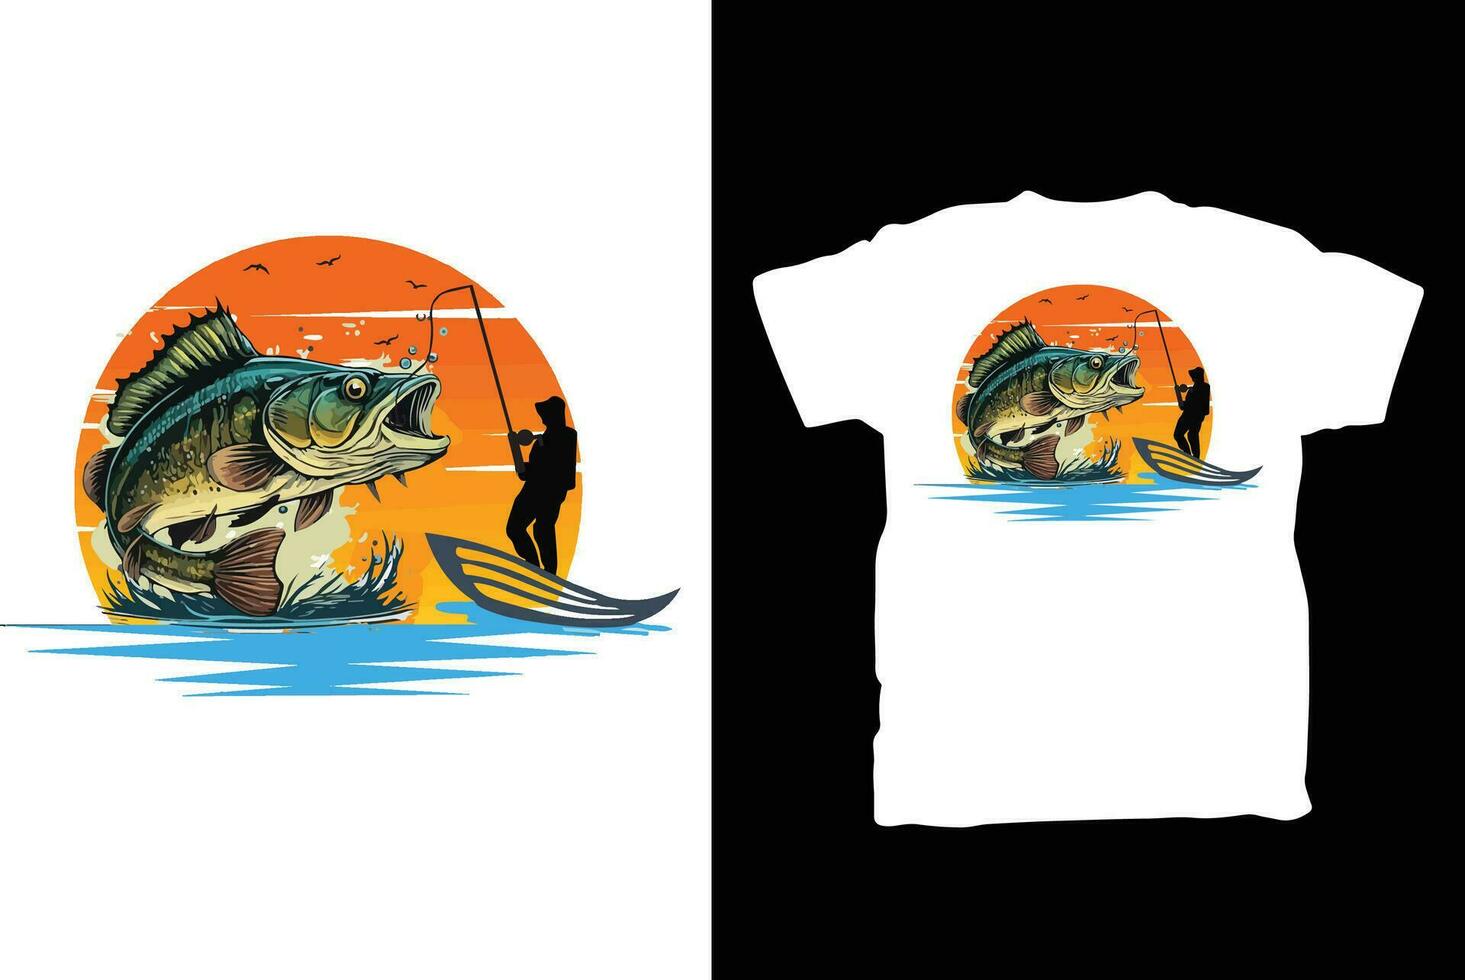 disegno della maglietta di pesca vettore